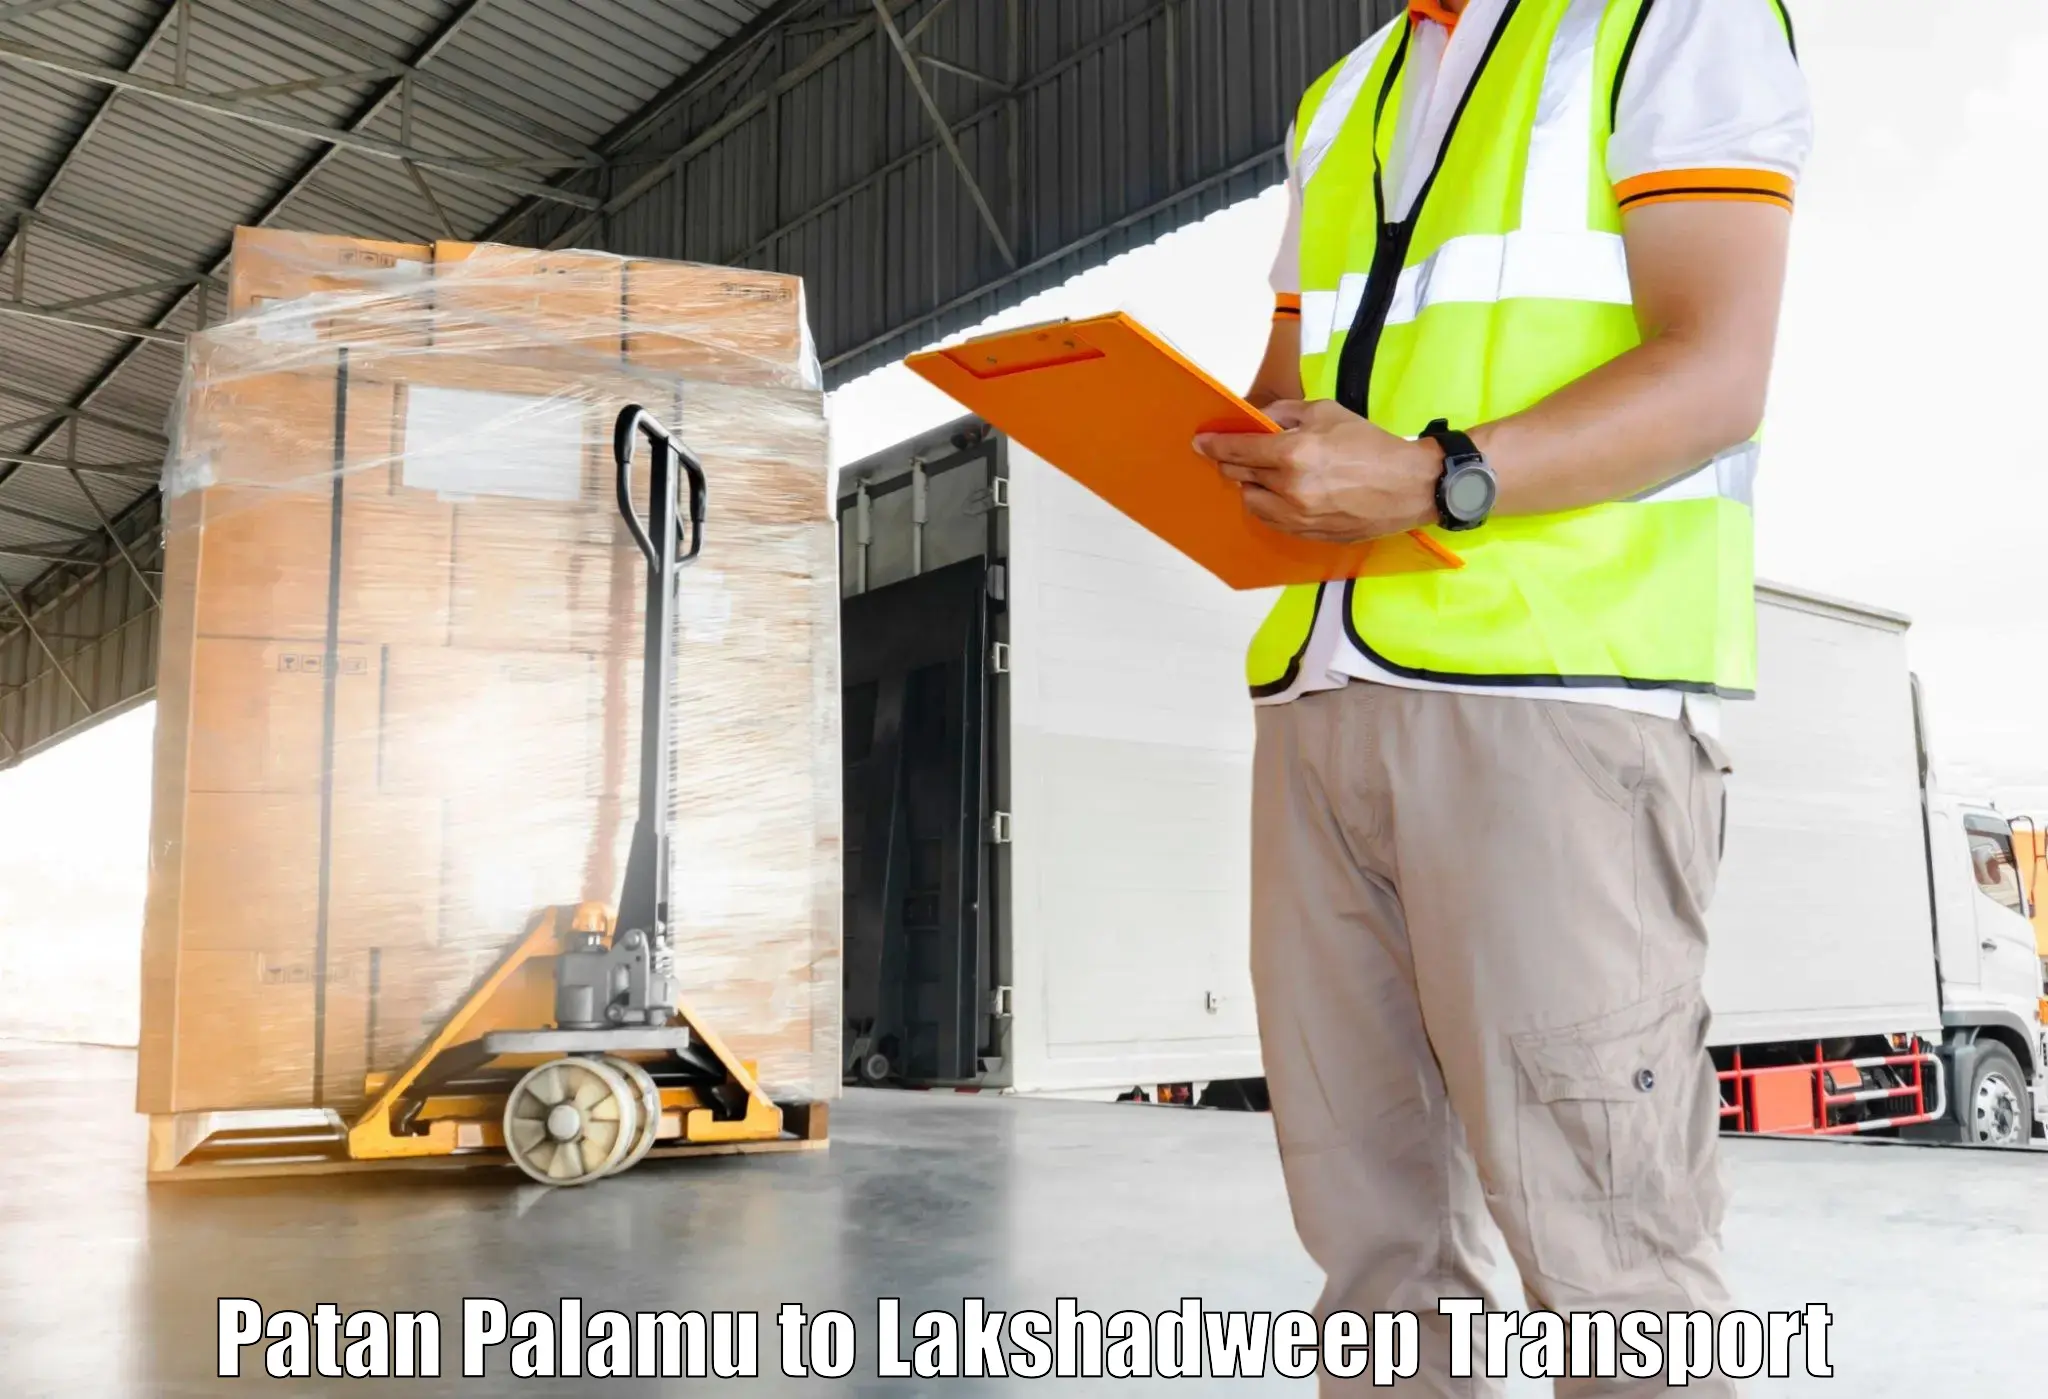 Interstate transport services Patan Palamu to Lakshadweep